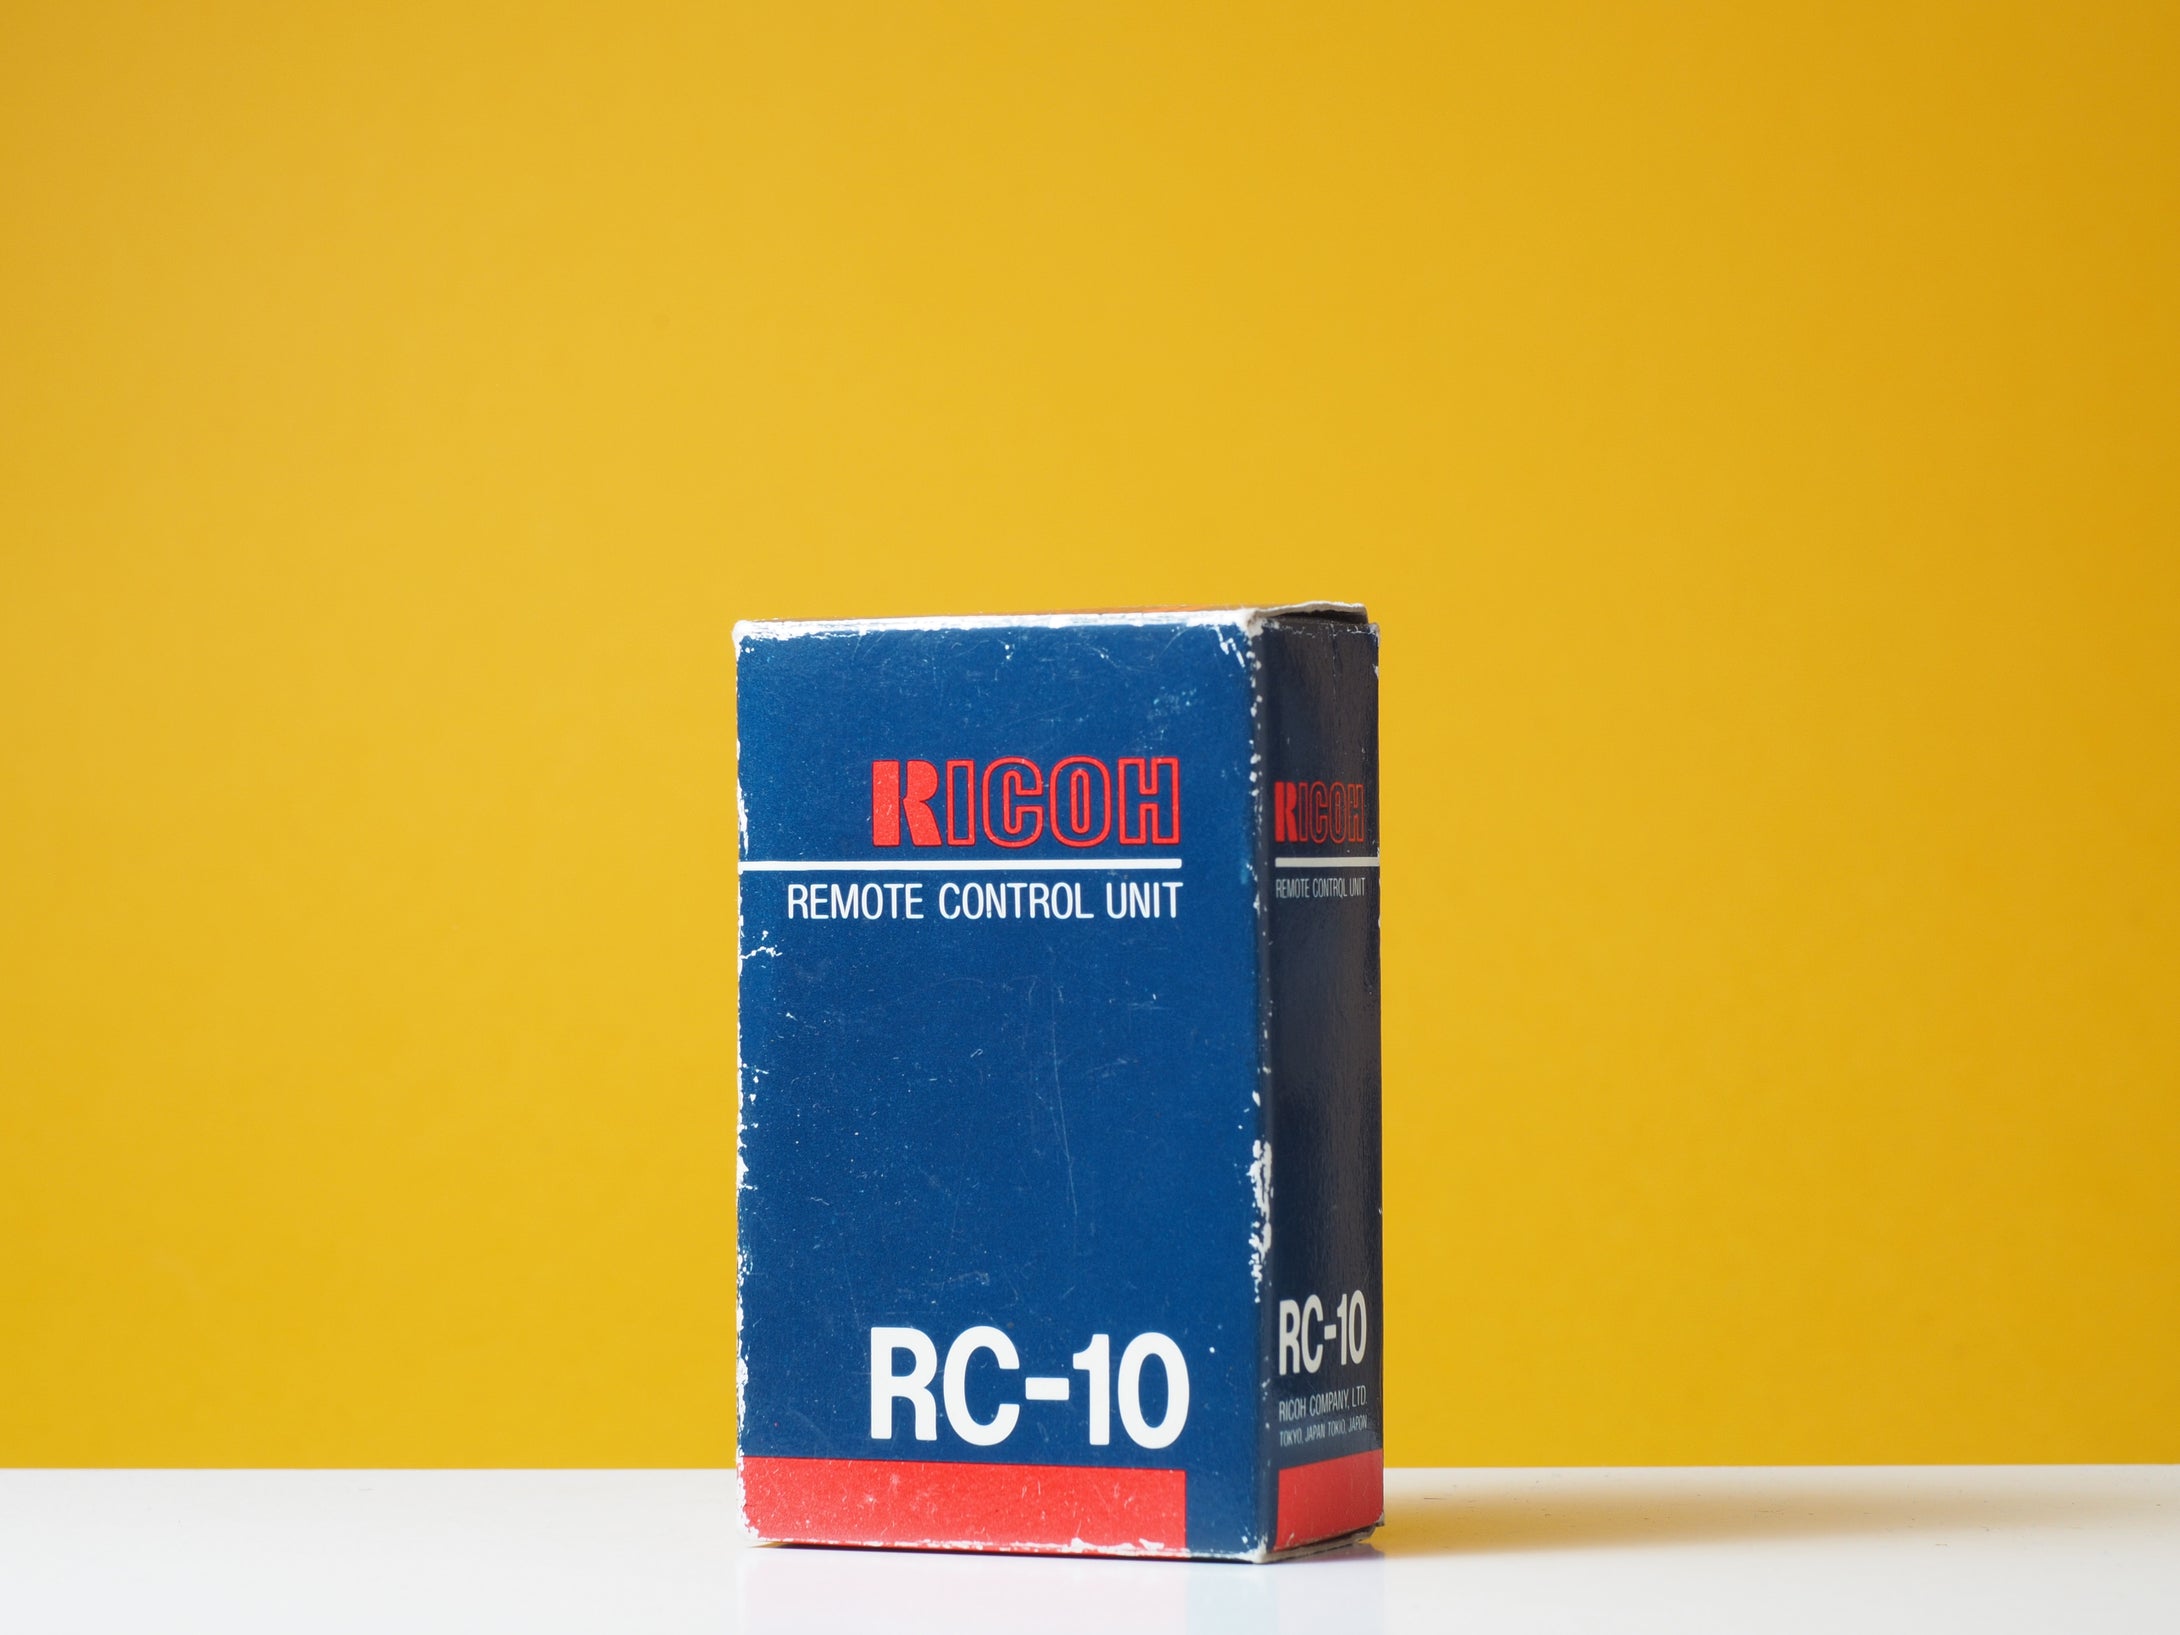 Ricoh Remote Control Unit RC-10